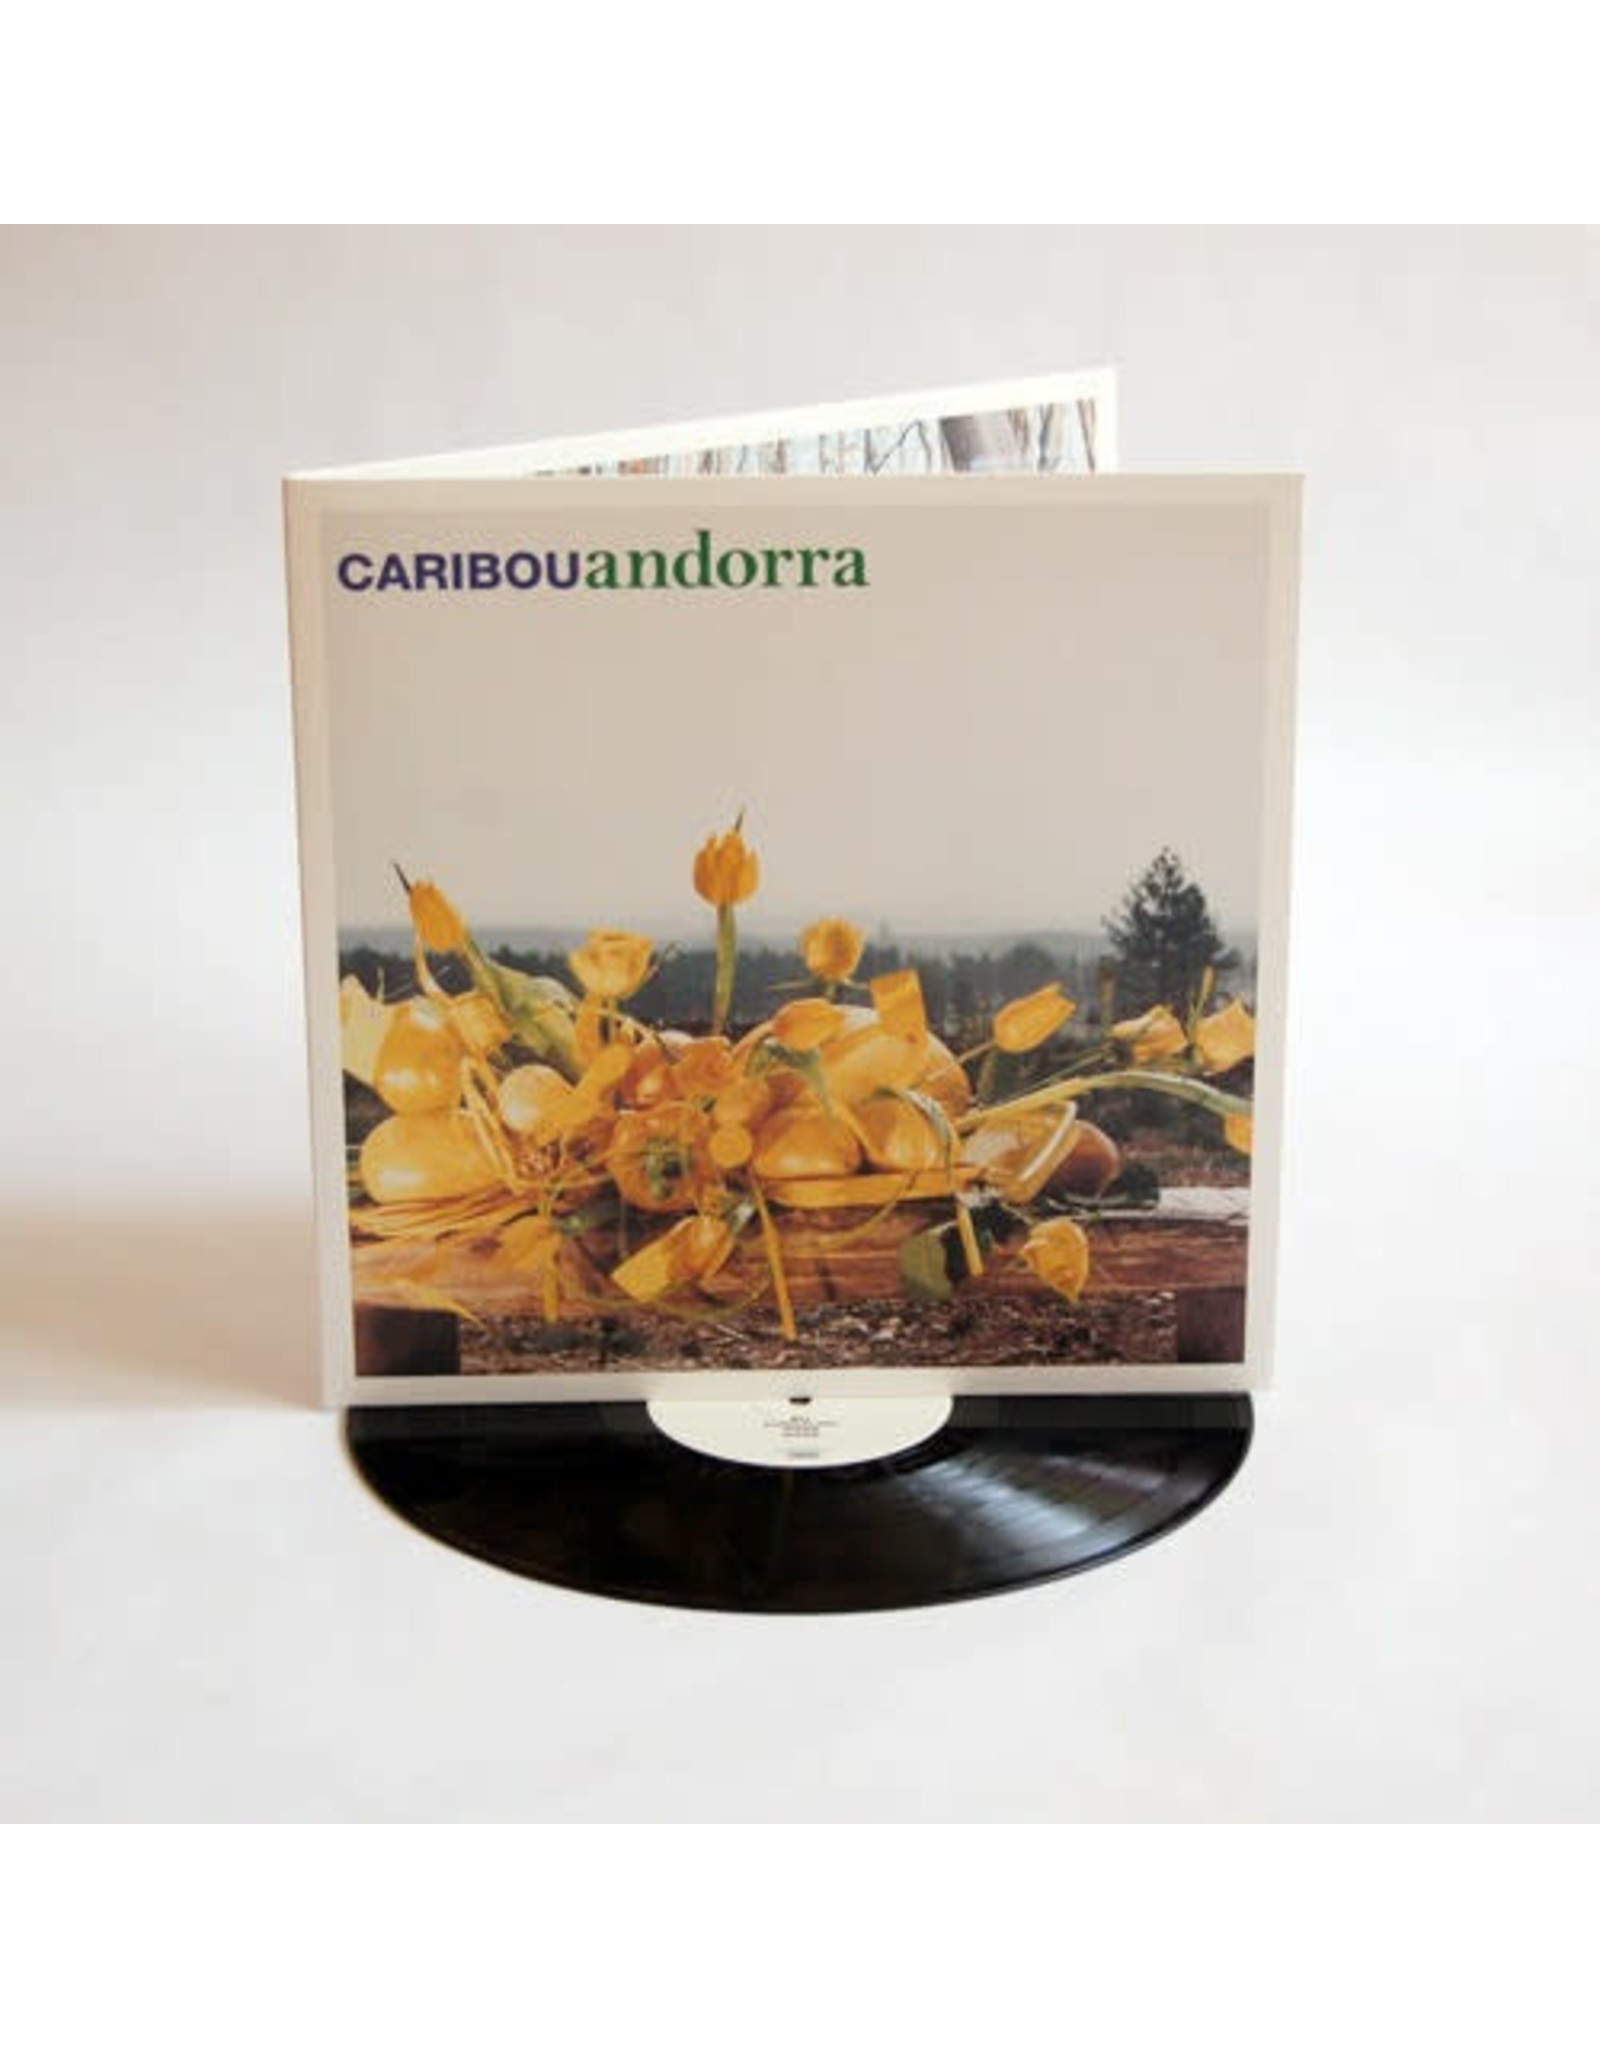 New Vinyl Caribou - Andorra LP